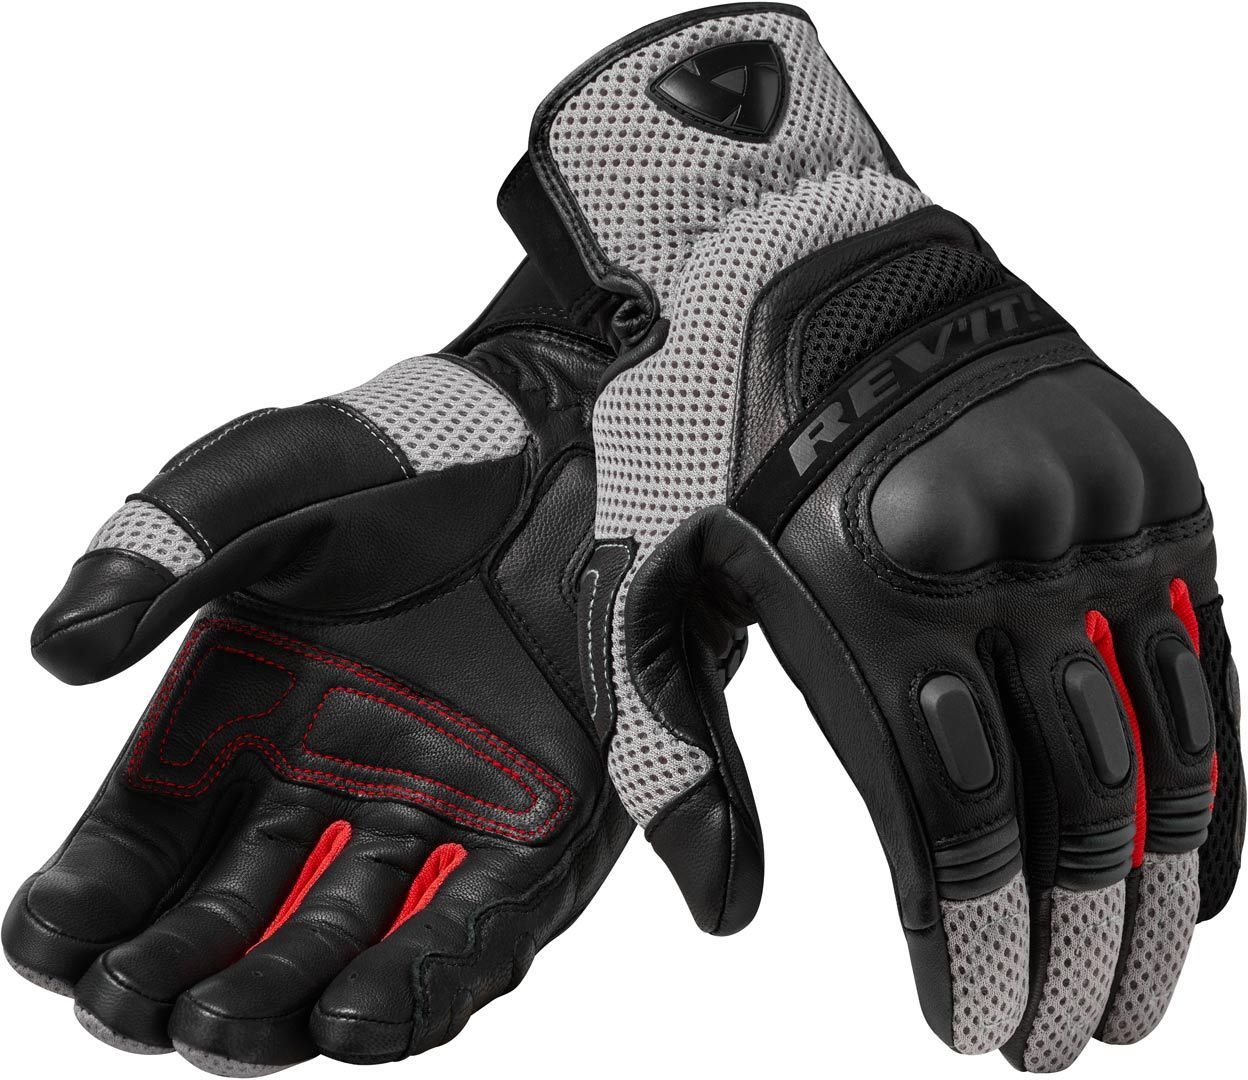 Revit Dirt 3 Motocross Handschuhe, schwarz-rot, Gre 4XL, schwarz-rot, Gre 4XL